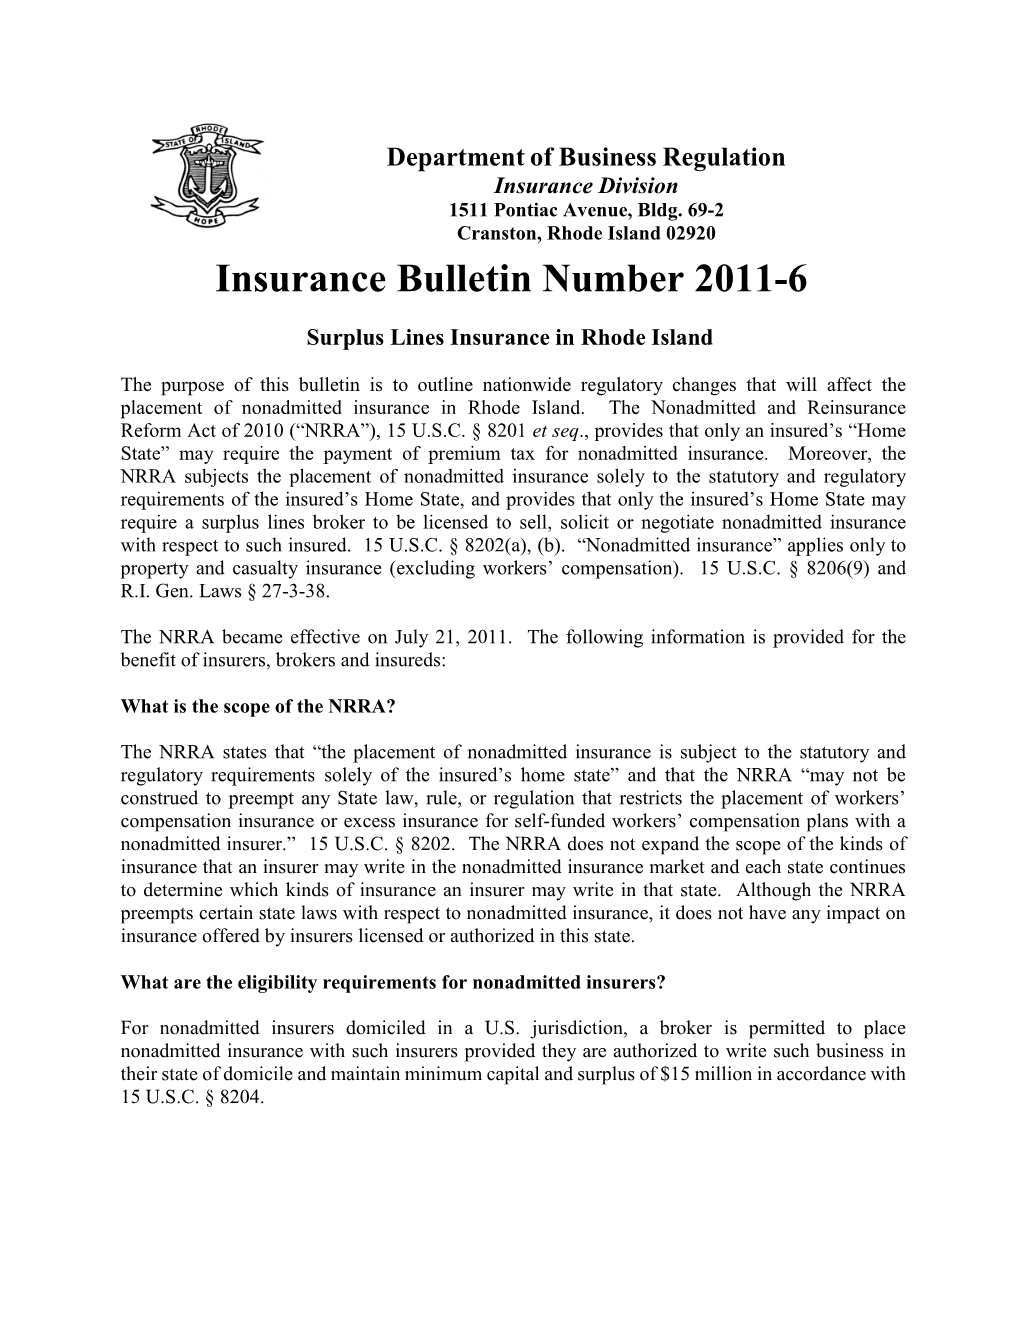 2011-6 Surplus Lines Insurance in Rhode Island